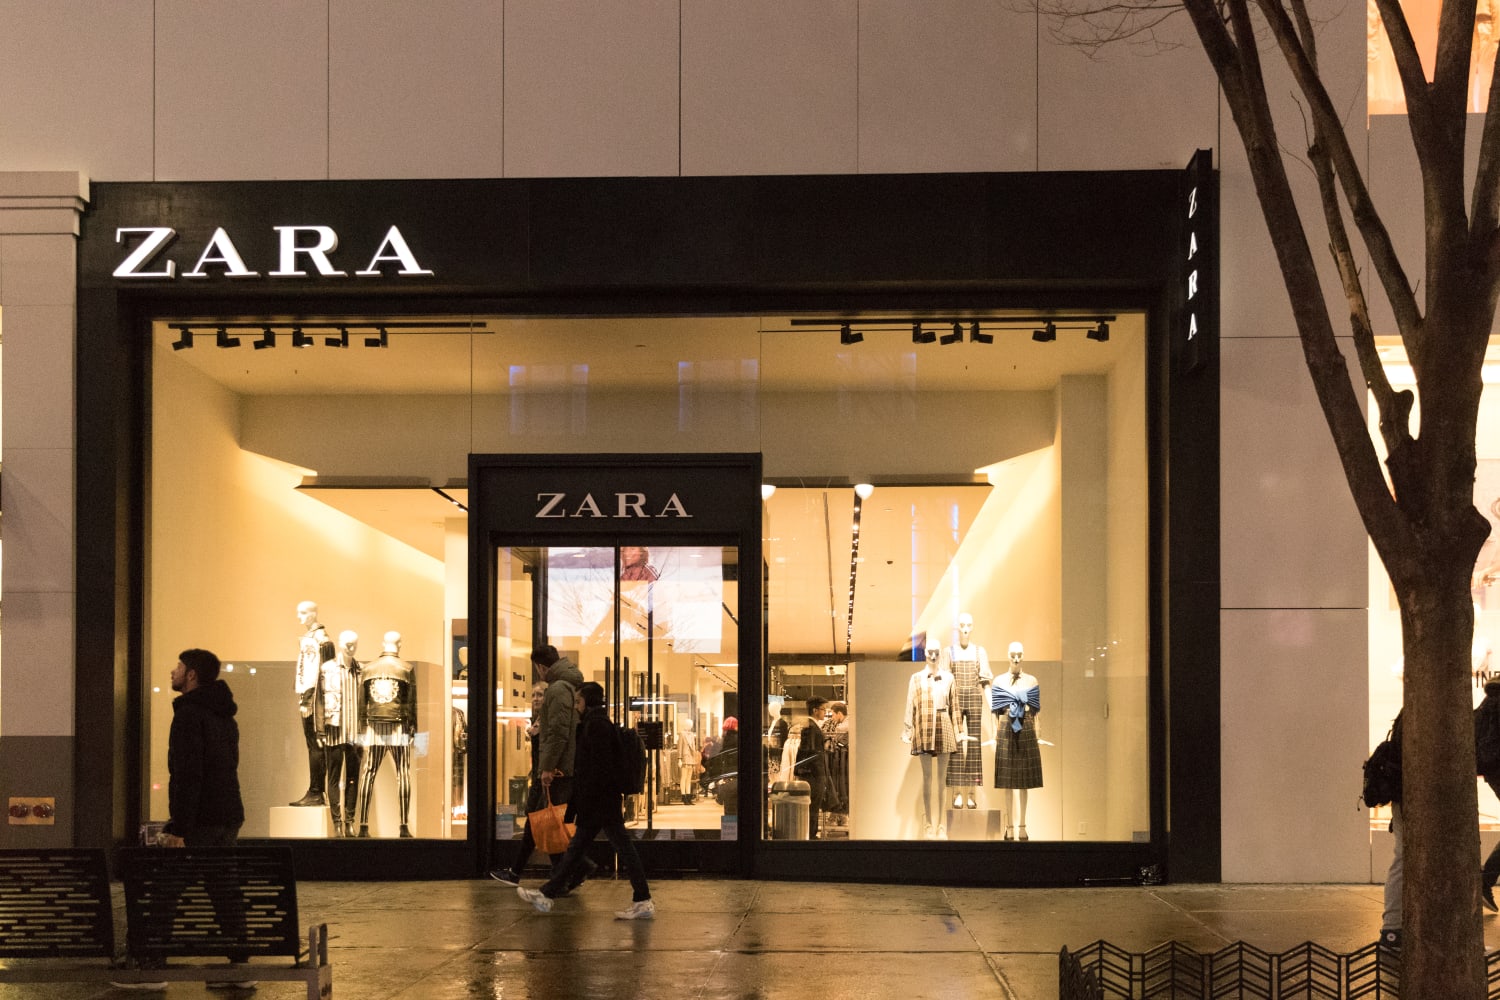 clothing brand zara